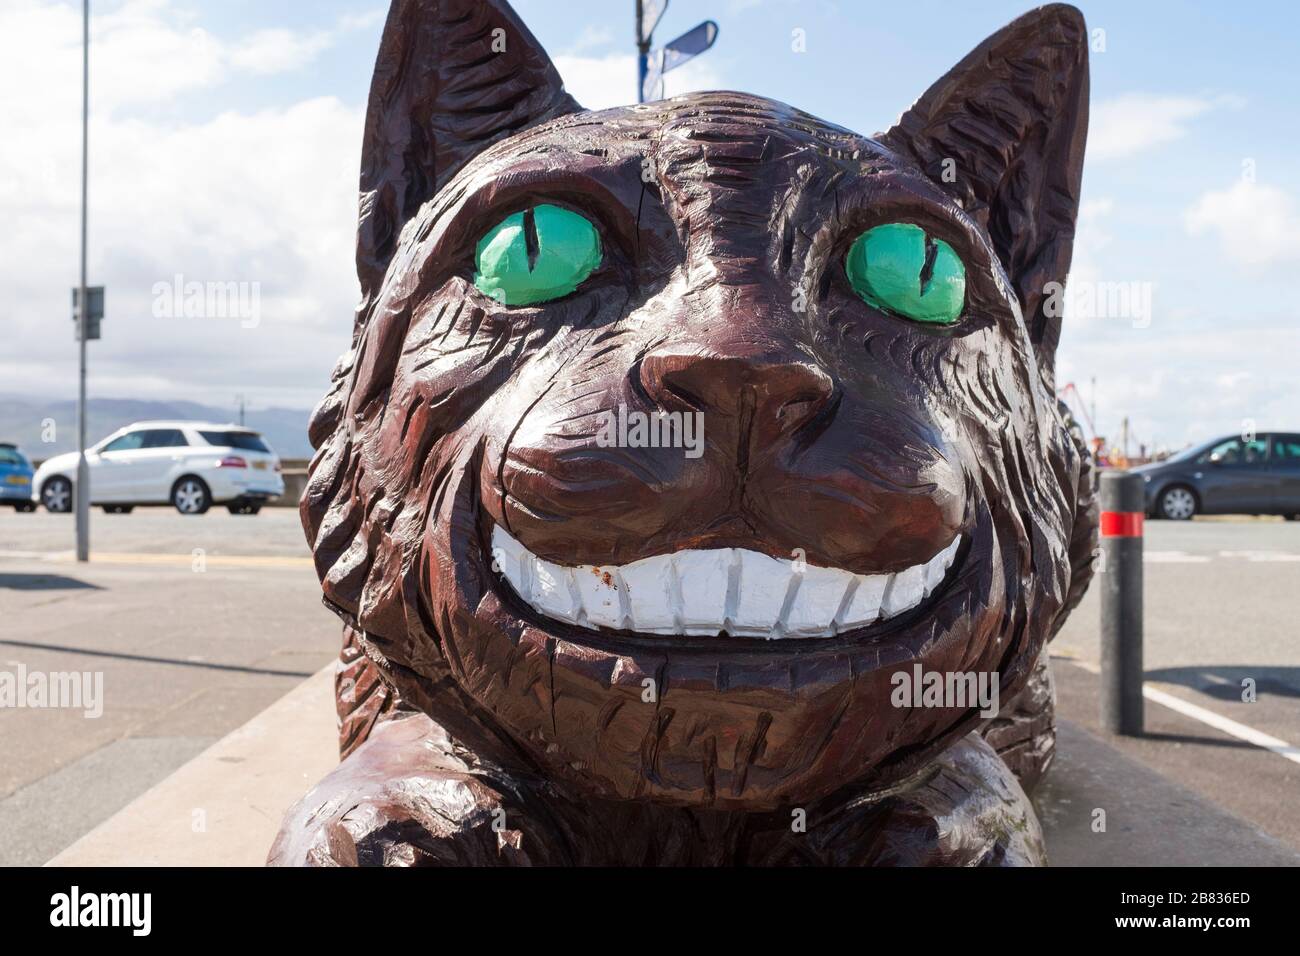 Escultura de Gato Cheshire, parte del sendero Alice in Wonderland en Llandudno, Gales, Reino Unido Foto de stock